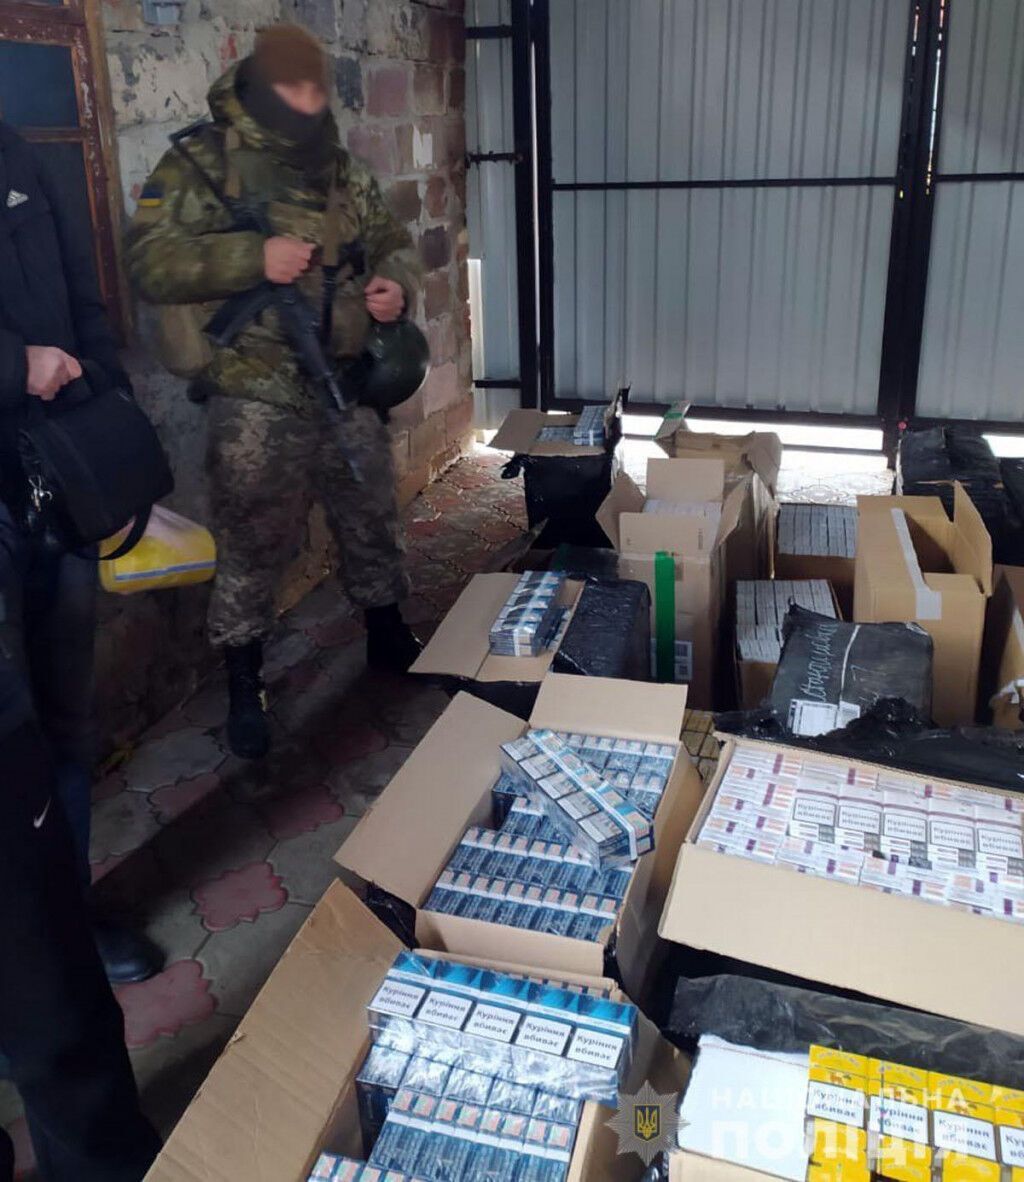 Поліцейські Донеччини викрили схему реалізації фальсифікованої тютюнової продукції в різних областях України